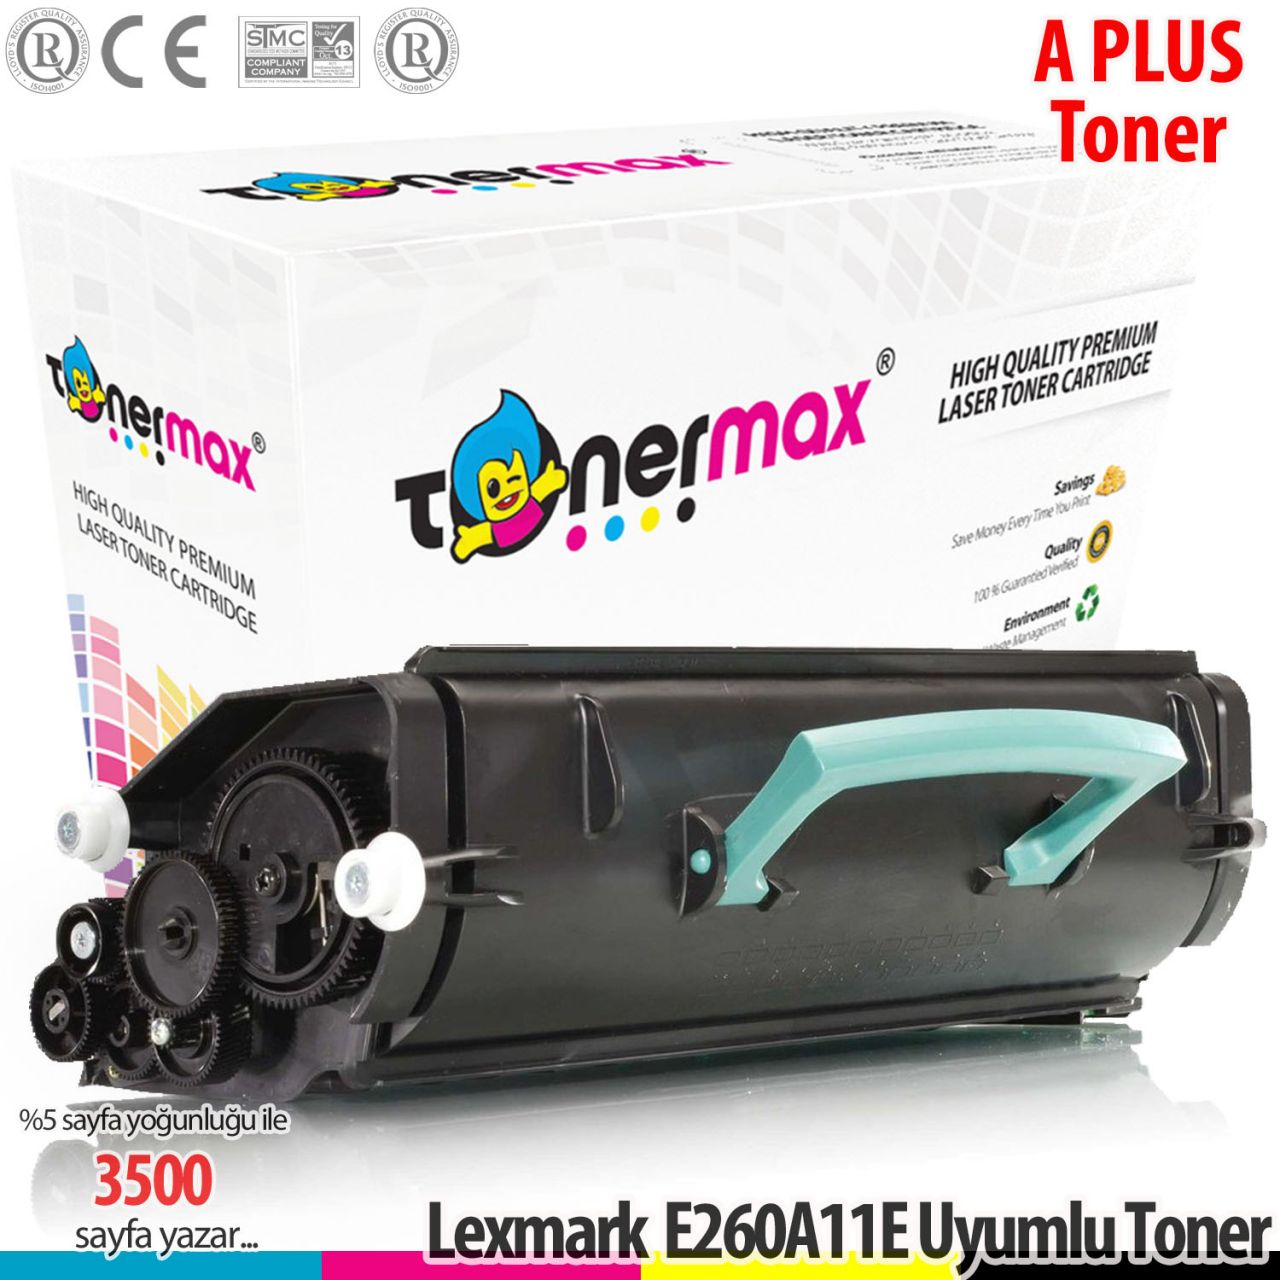 Lexmark E260A11E / E360 / E460 / E462dtn A Plus Muadil Toneri